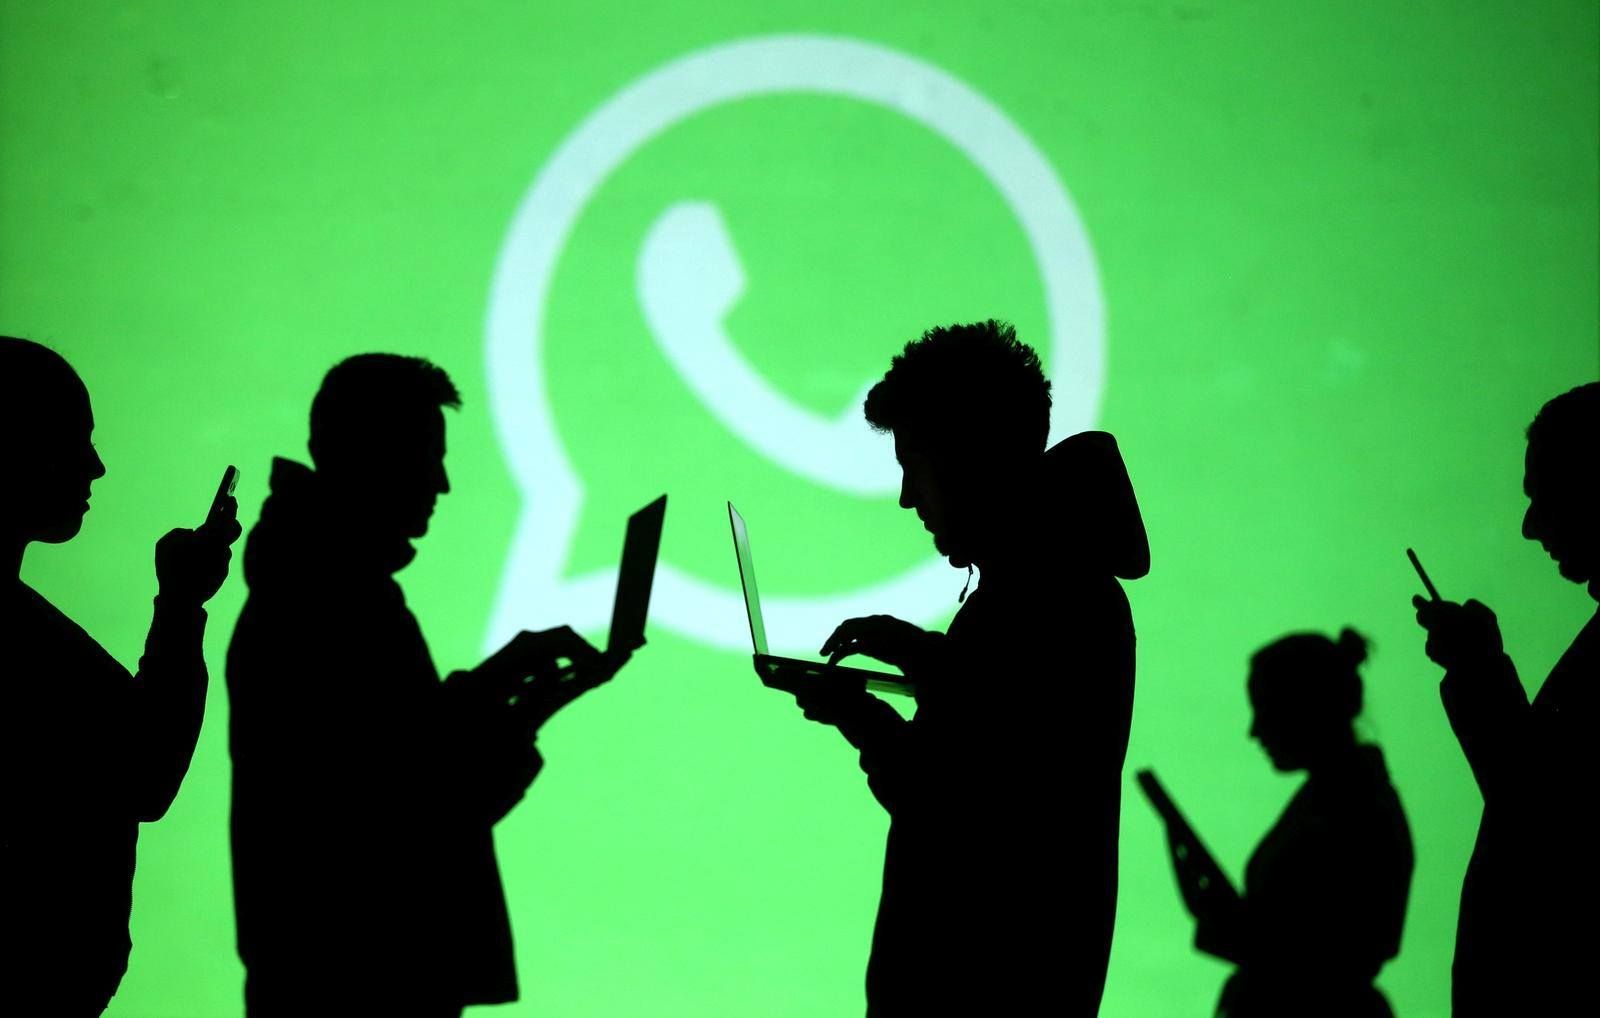 WhatsApp і дані користувачів. Чи виправдано обурення новими правилами конфіденційності?